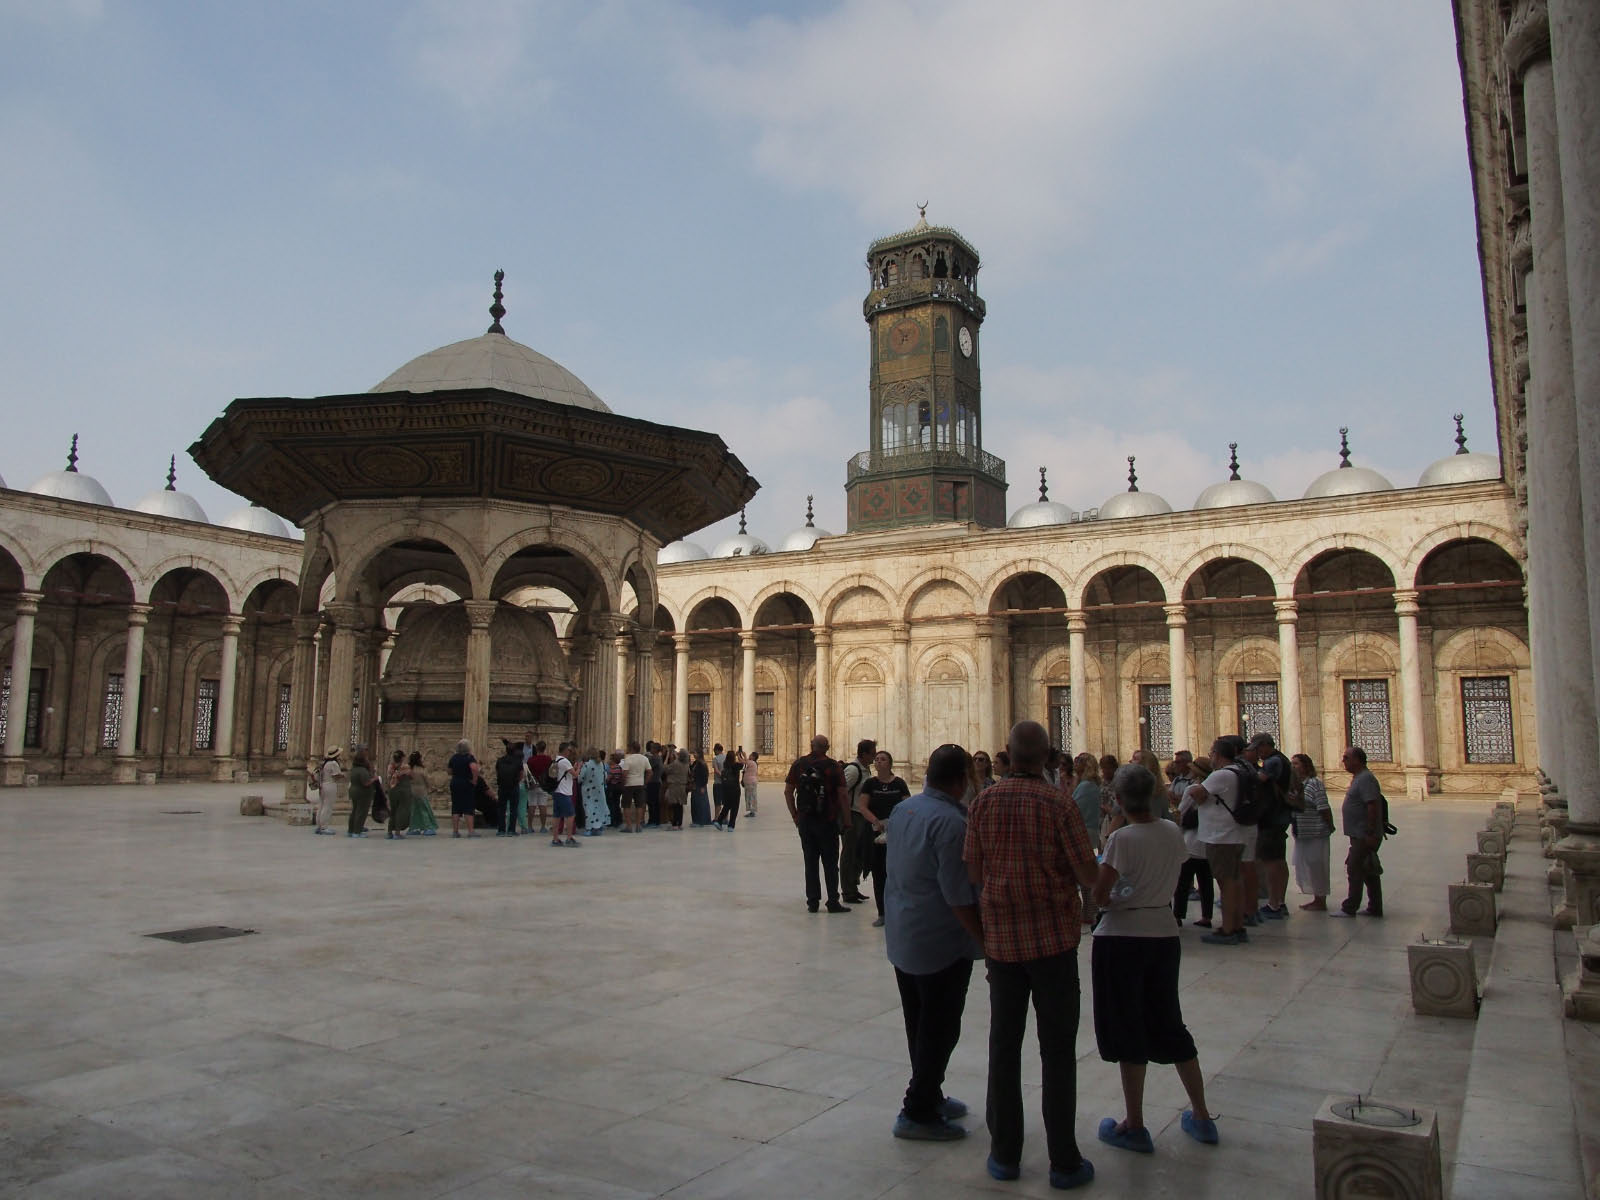 Egypte: cours de la mosquée avec une horloge offerte par la France en remerciement de l'obélisque, qui n'a jamais fonctionnée